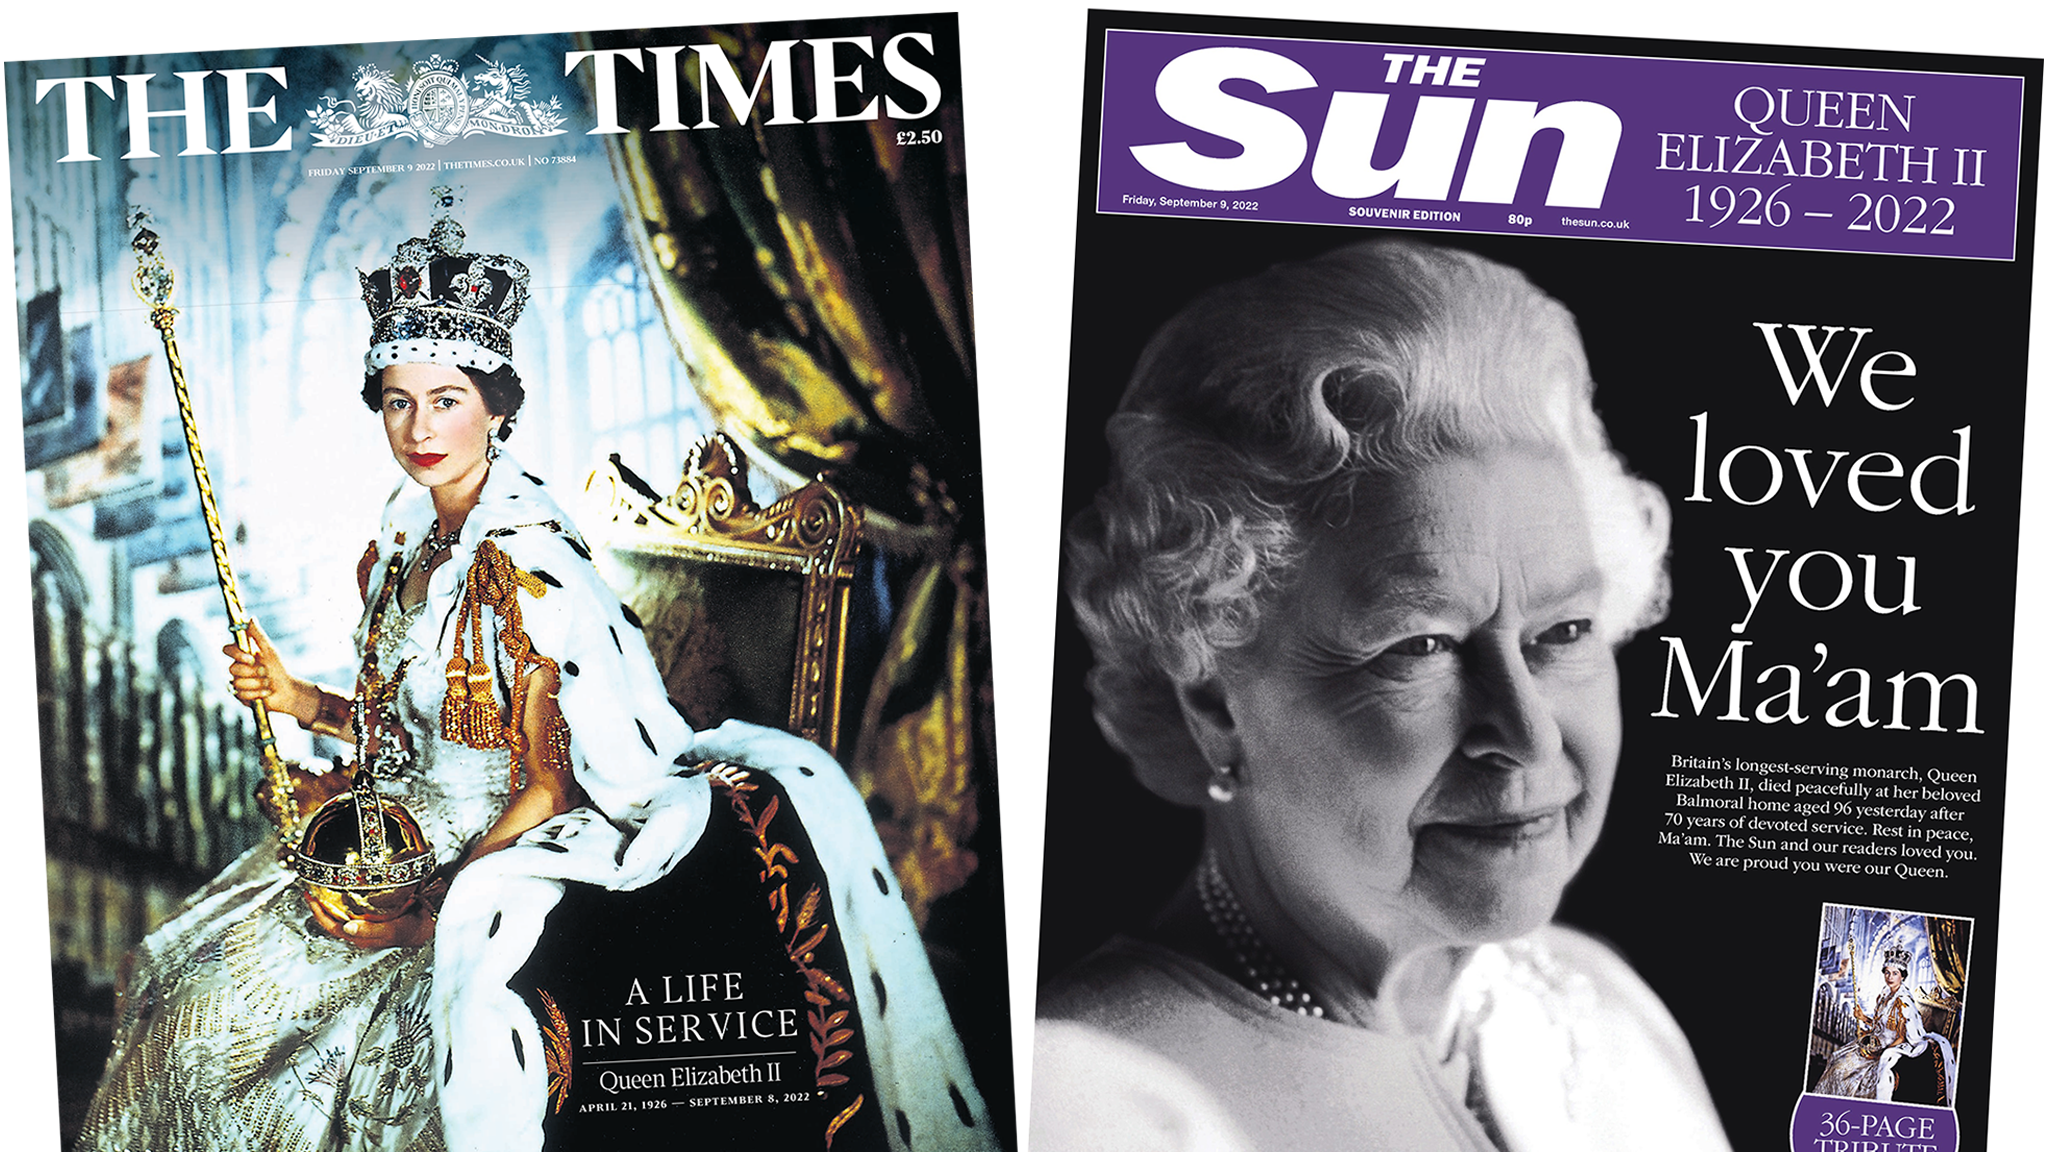 الملكة إليزابيث الثانية: كيف غطت الصحف وفاة ملكة بريطانيا؟